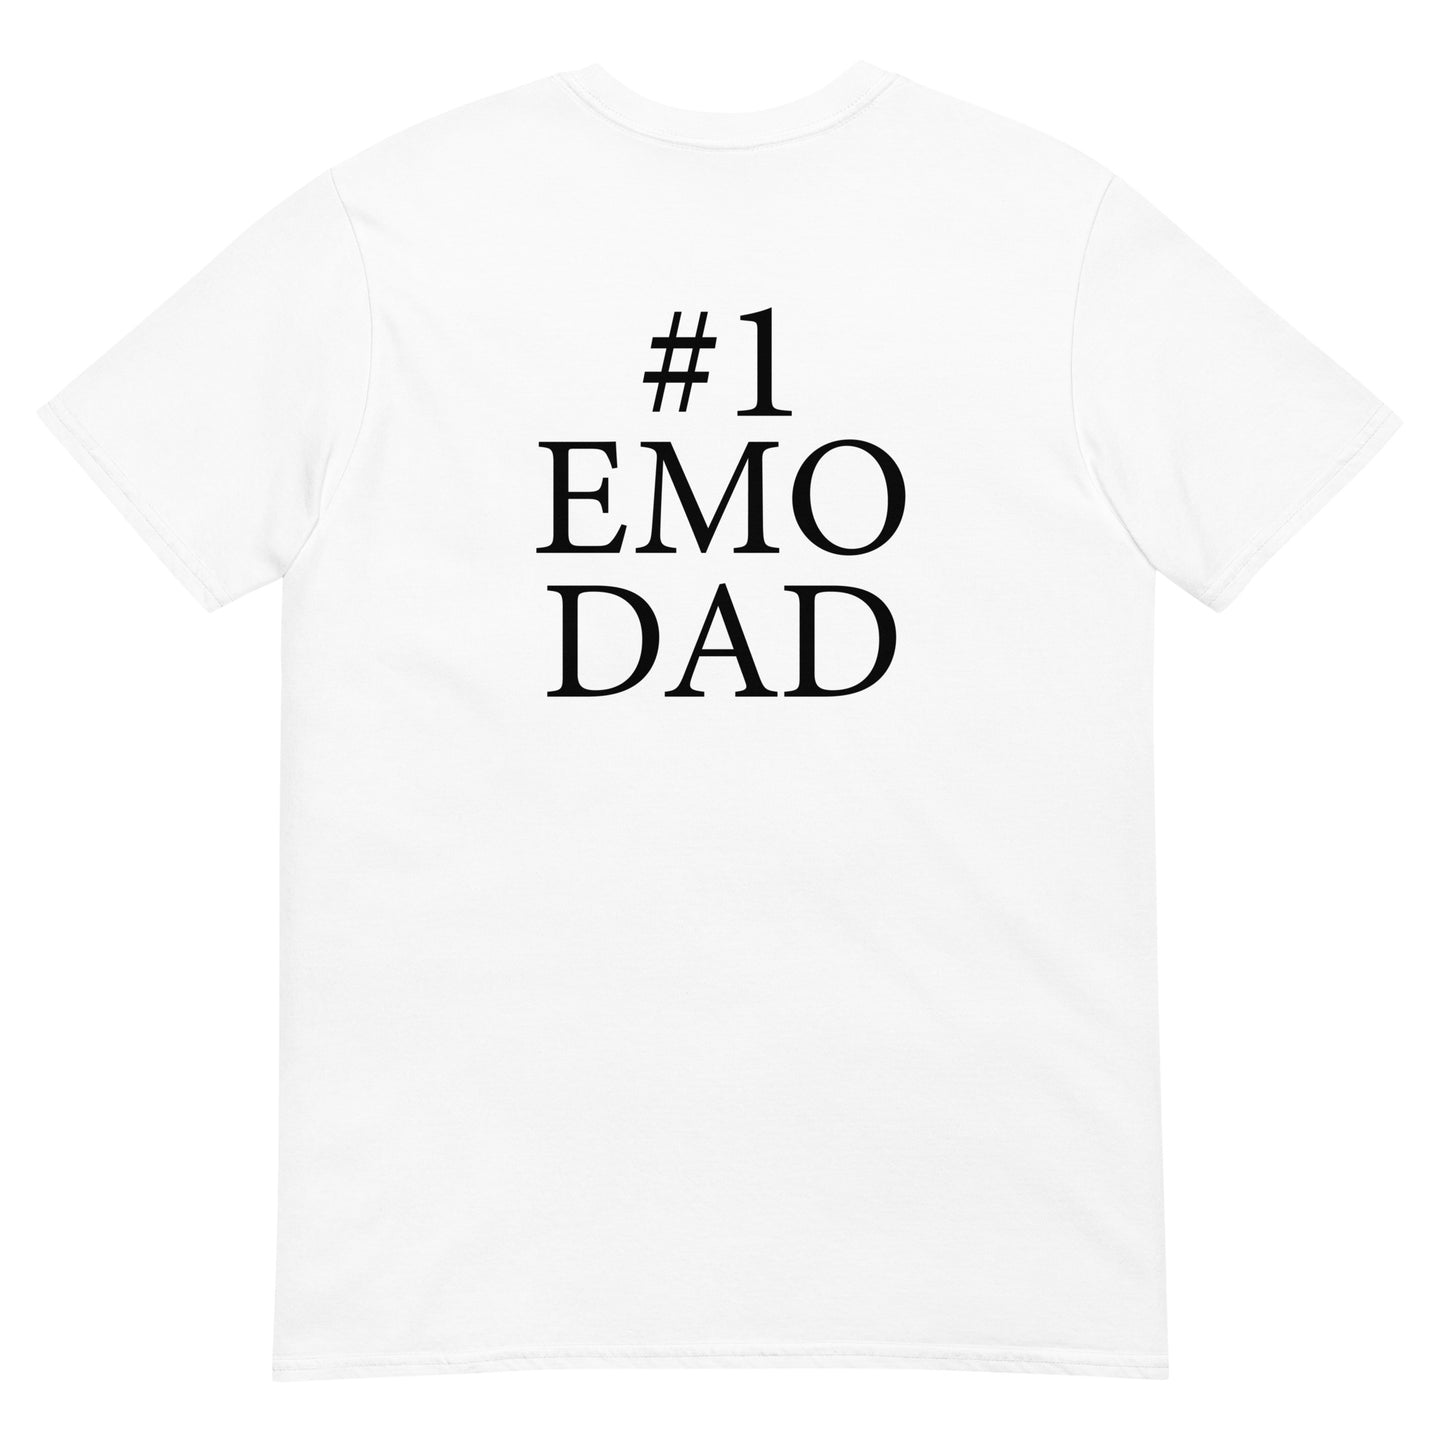 EMO DAD camiseta unisex de manga corta